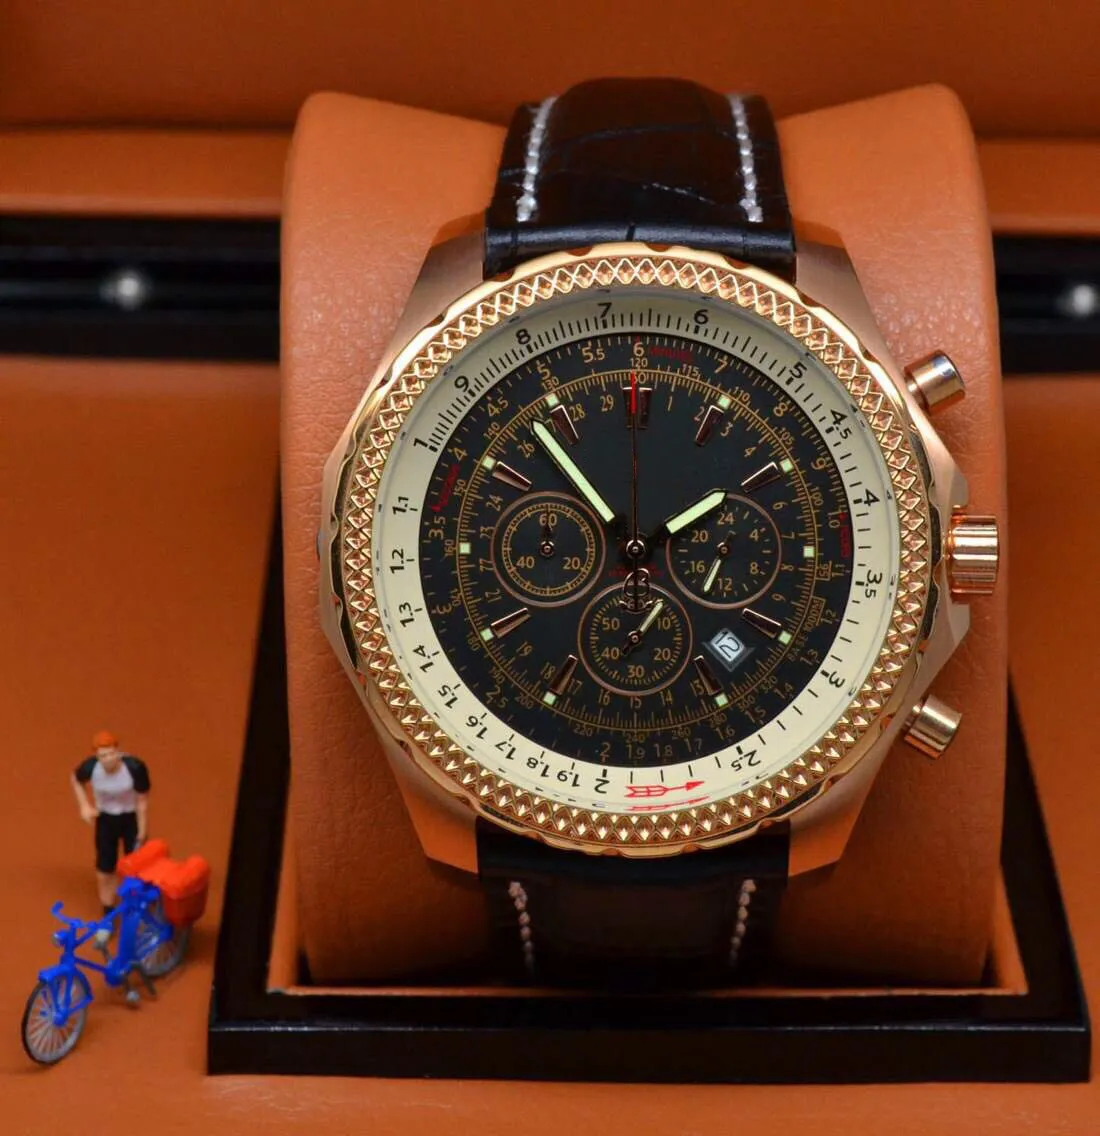 New Stley Big Watch 44mm Mechanical Golden Super Big Halt Watch Limited White Dial Herrenuhr Edelstahl Armbanduhr Herrenuhren